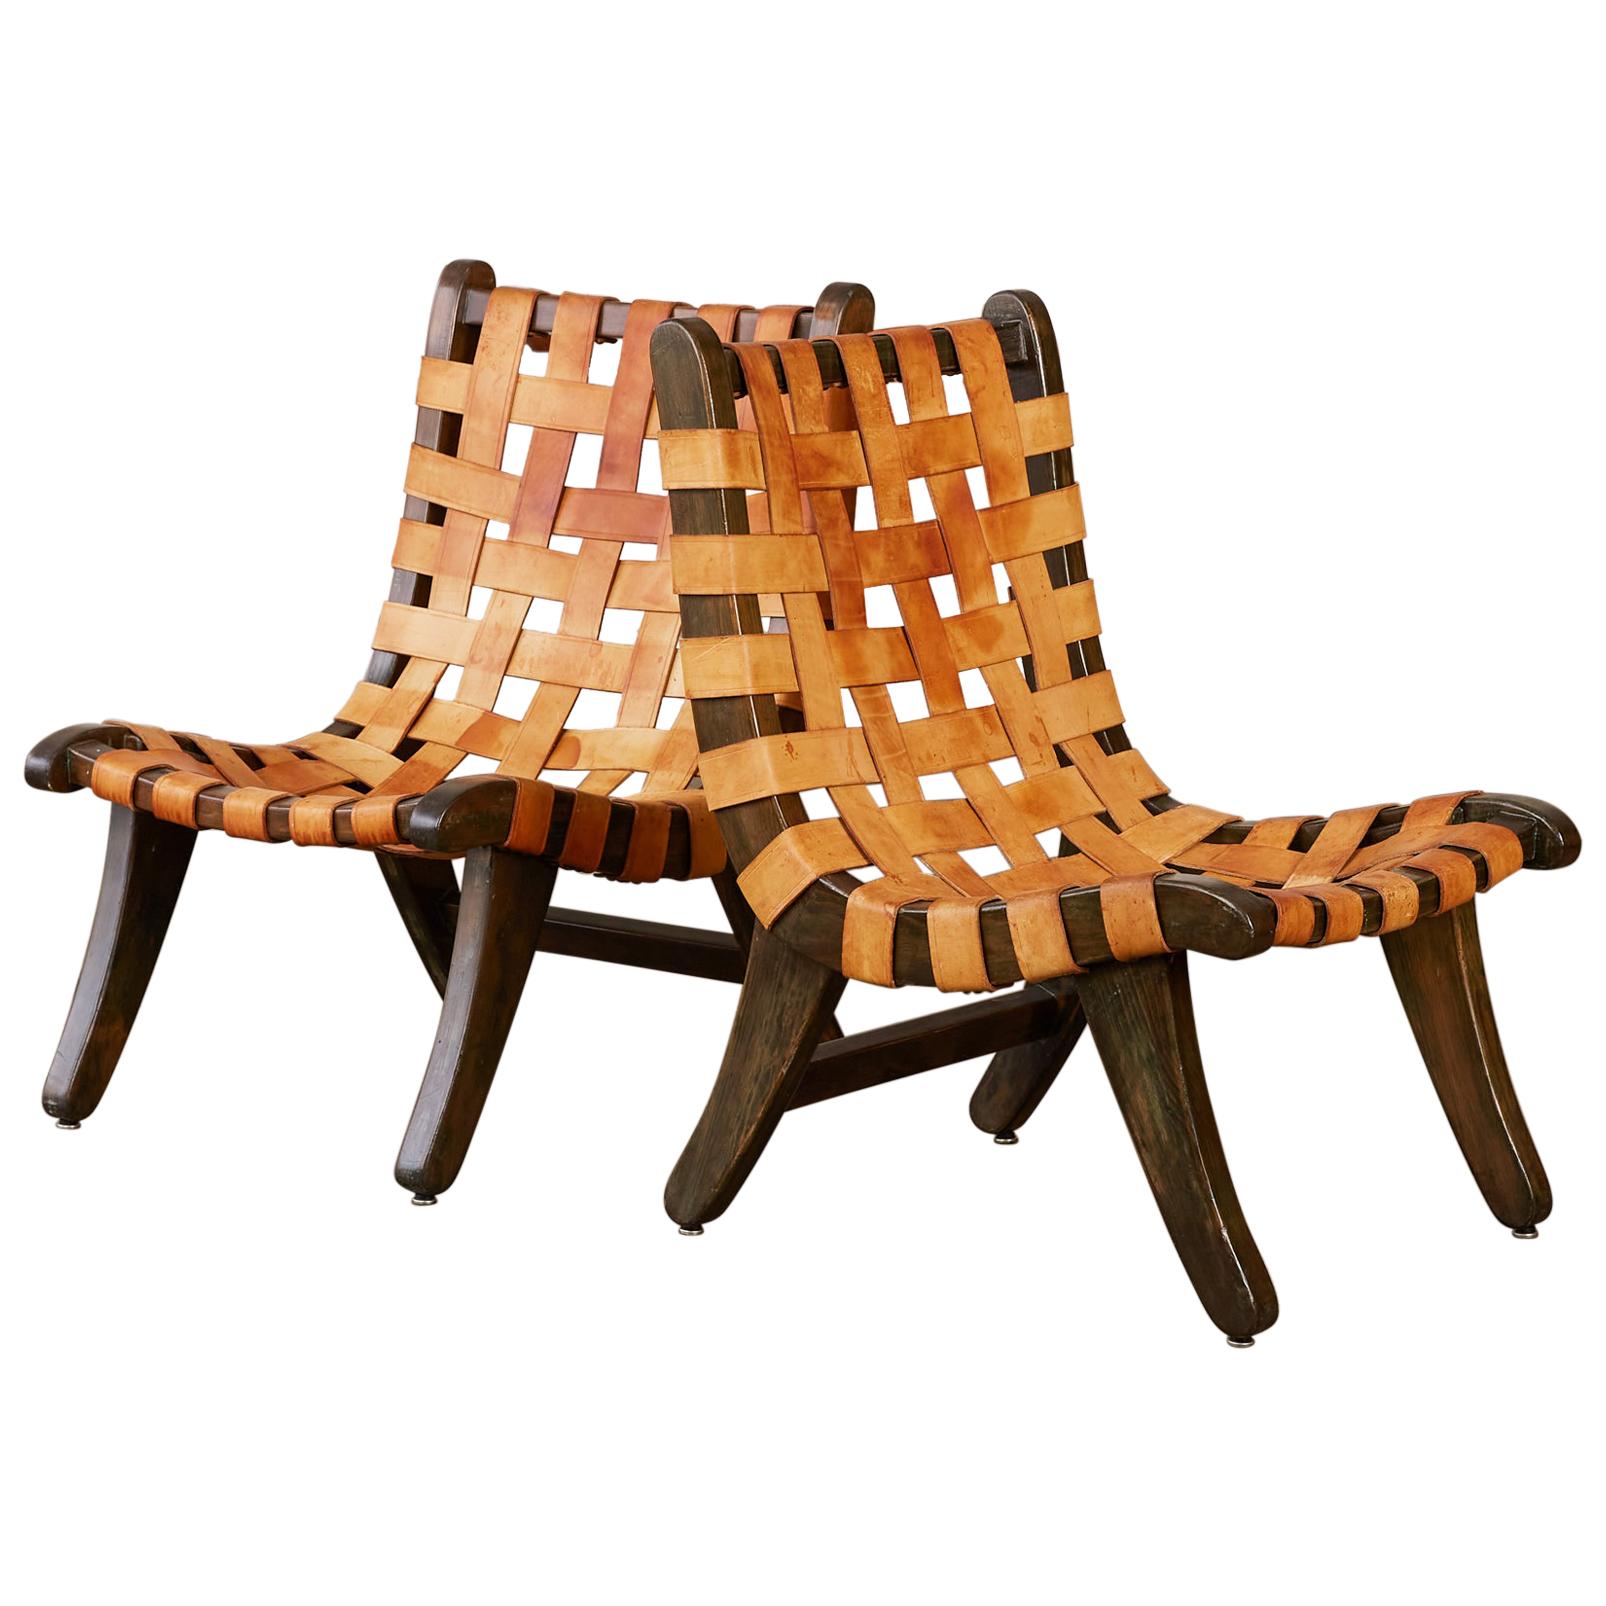 Michael van Beuren “San Miguelito” Chair